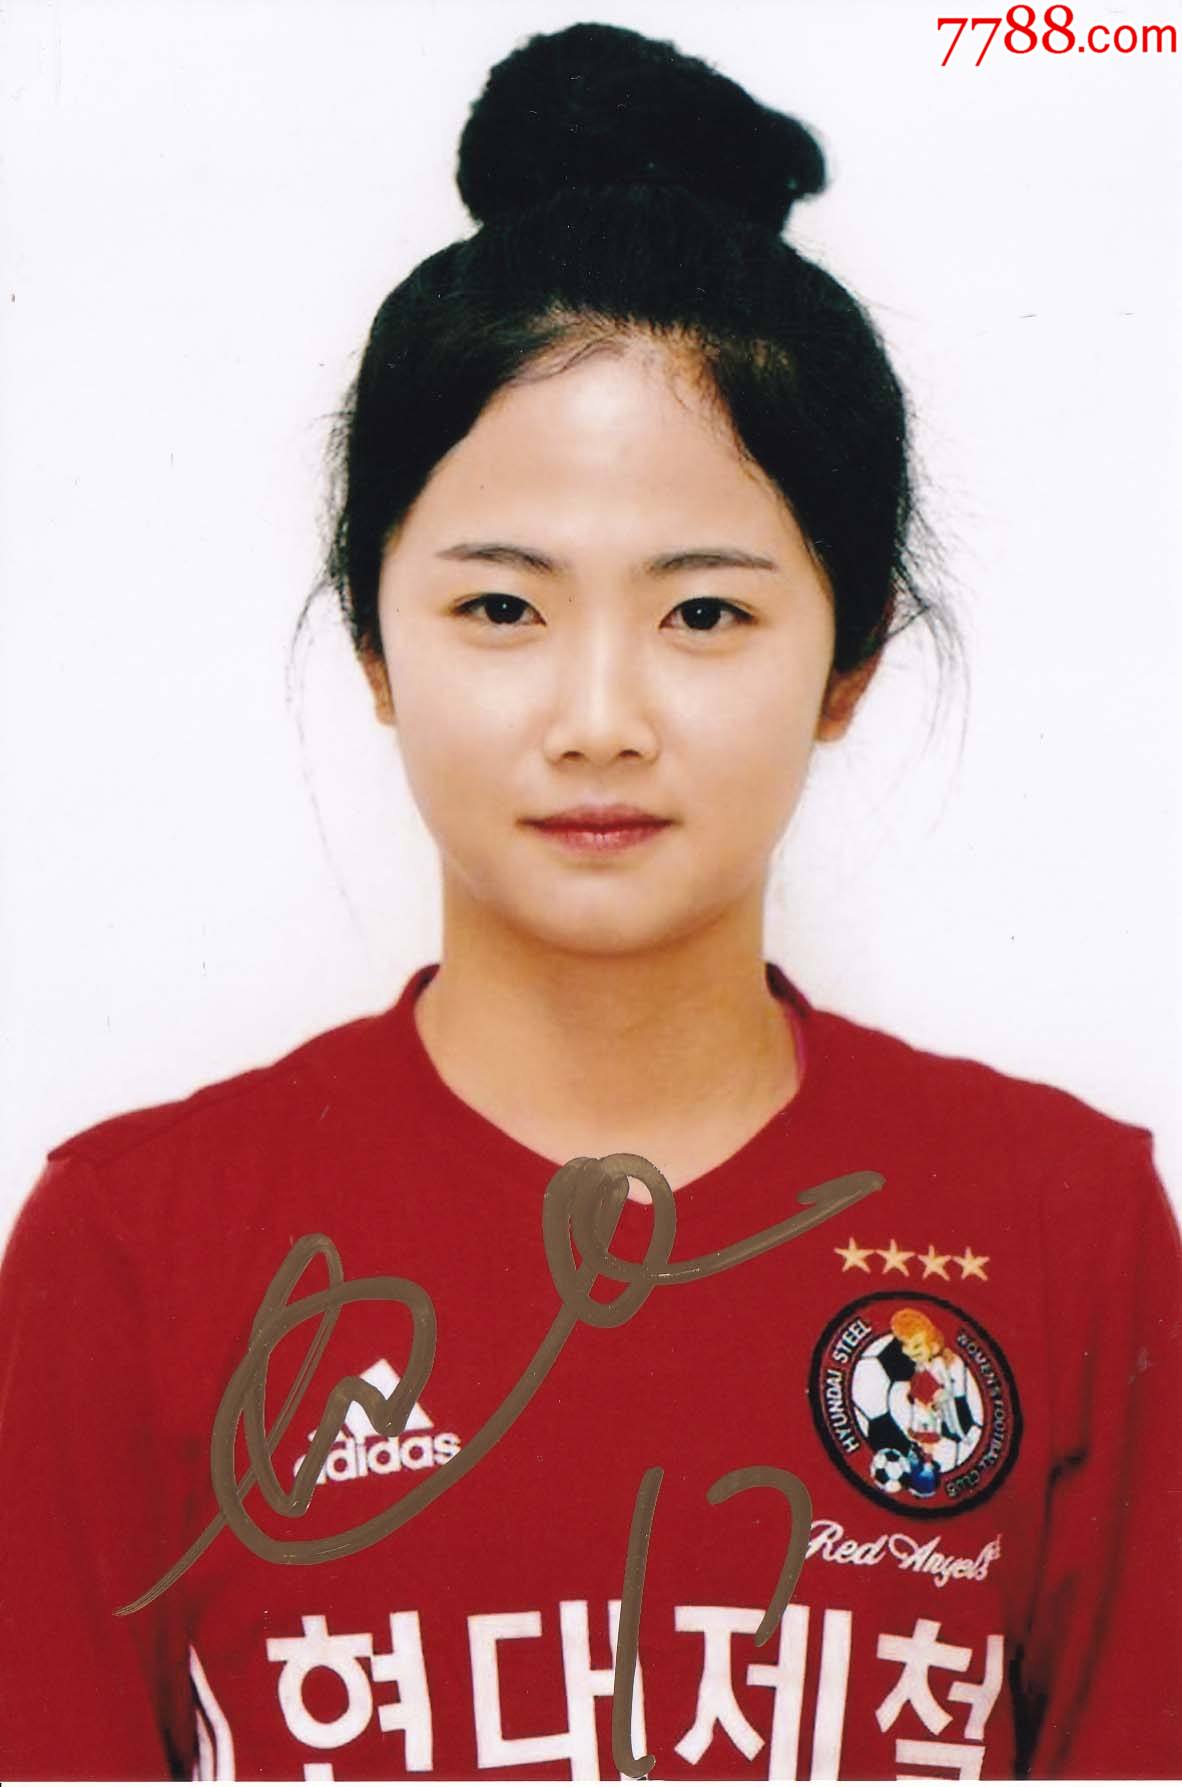 正品韩国正版足球李玟娥亲笔签名照送礼佳品生日礼物珍藏